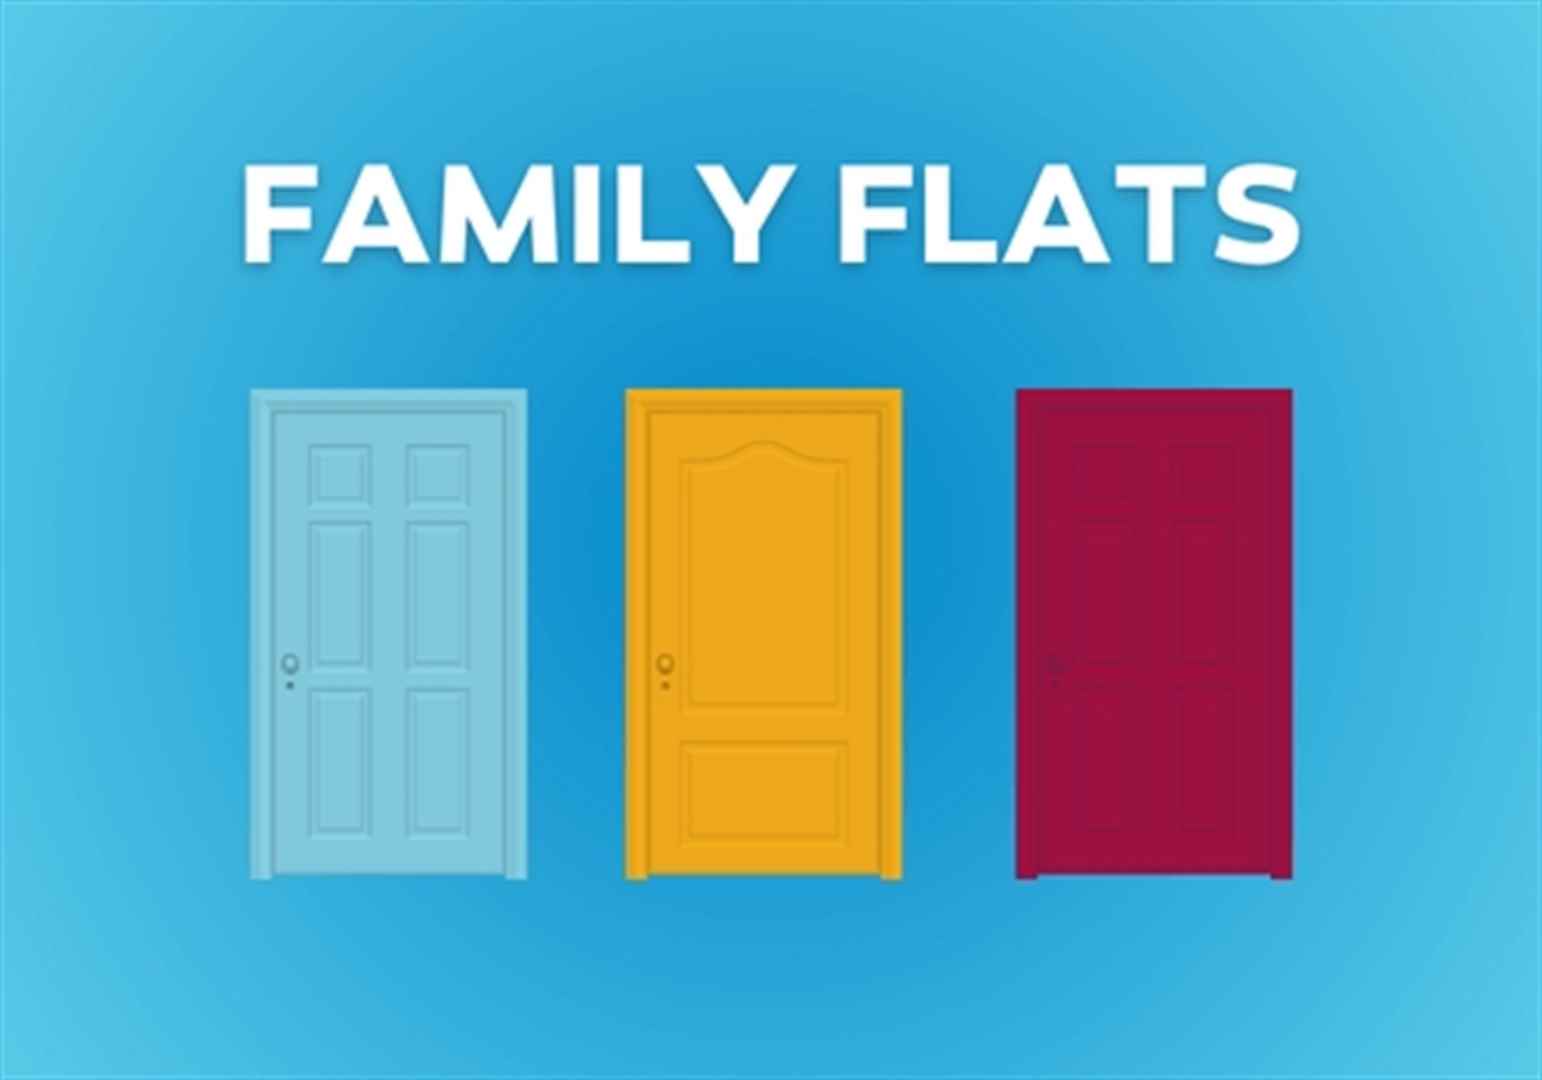 Family flats